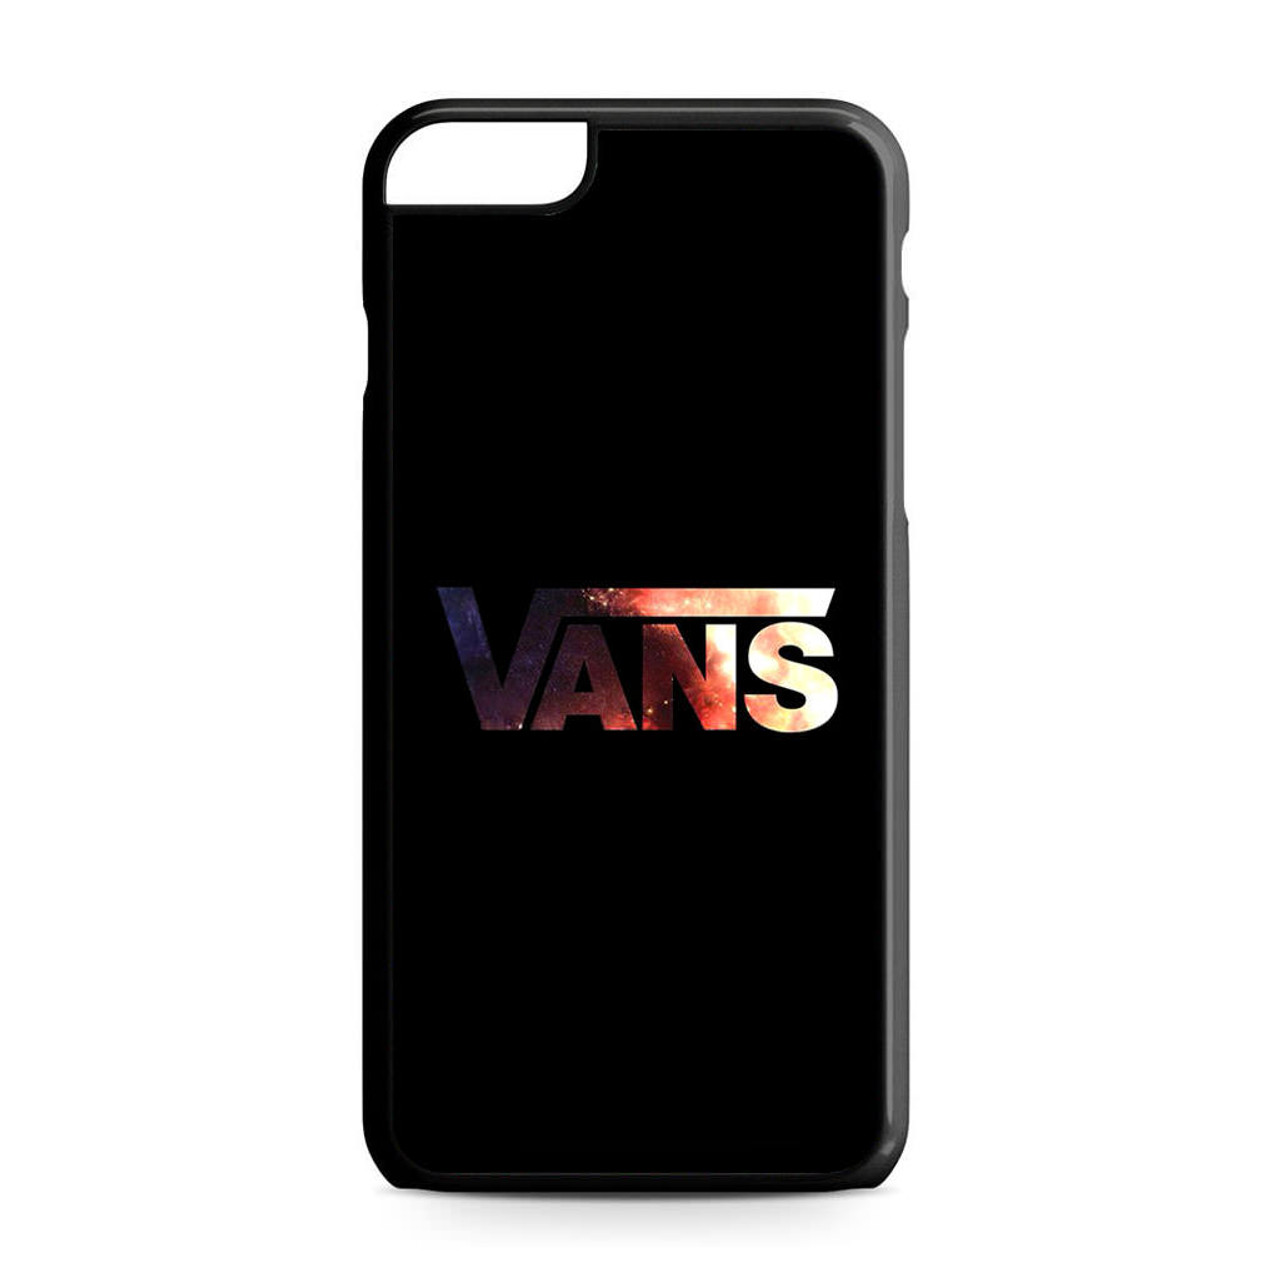 vans phone case iphone 6s plus